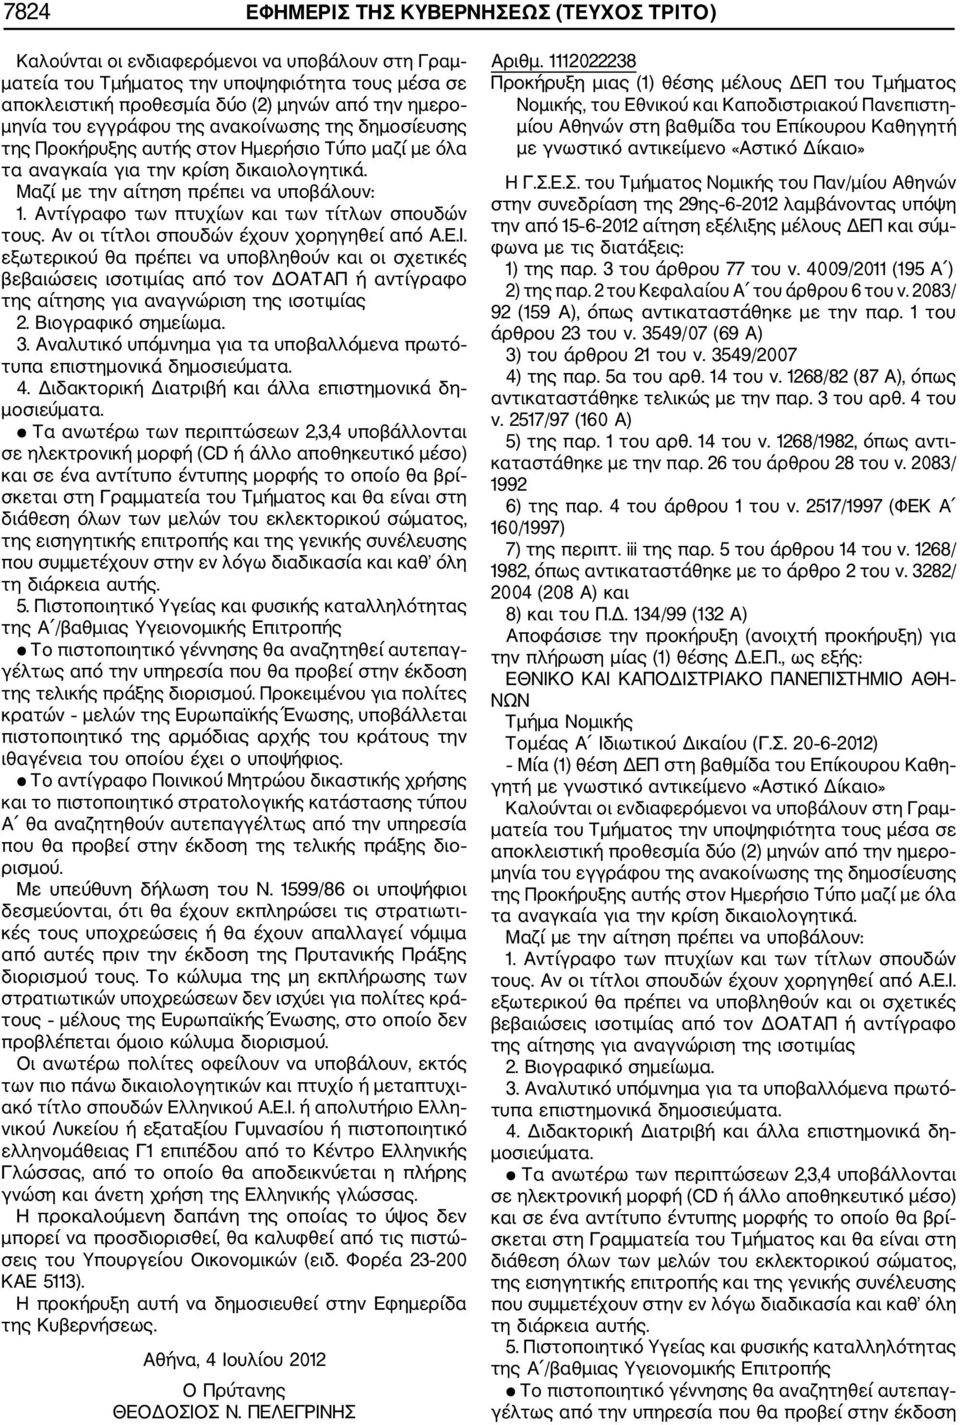 Γ.Σ.Ε.Σ. του Τμήματος Νομικής του Παν/μίου Αθηνών στην συνεδρίαση της 29ης 6 2012 λαμβάνοντας υπόψη την από 15 6 2012 αίτηση εξέλιξης μέλους ΔΕΠ και σύμ φωνα με τις διατάξεις: 1) της παρ.